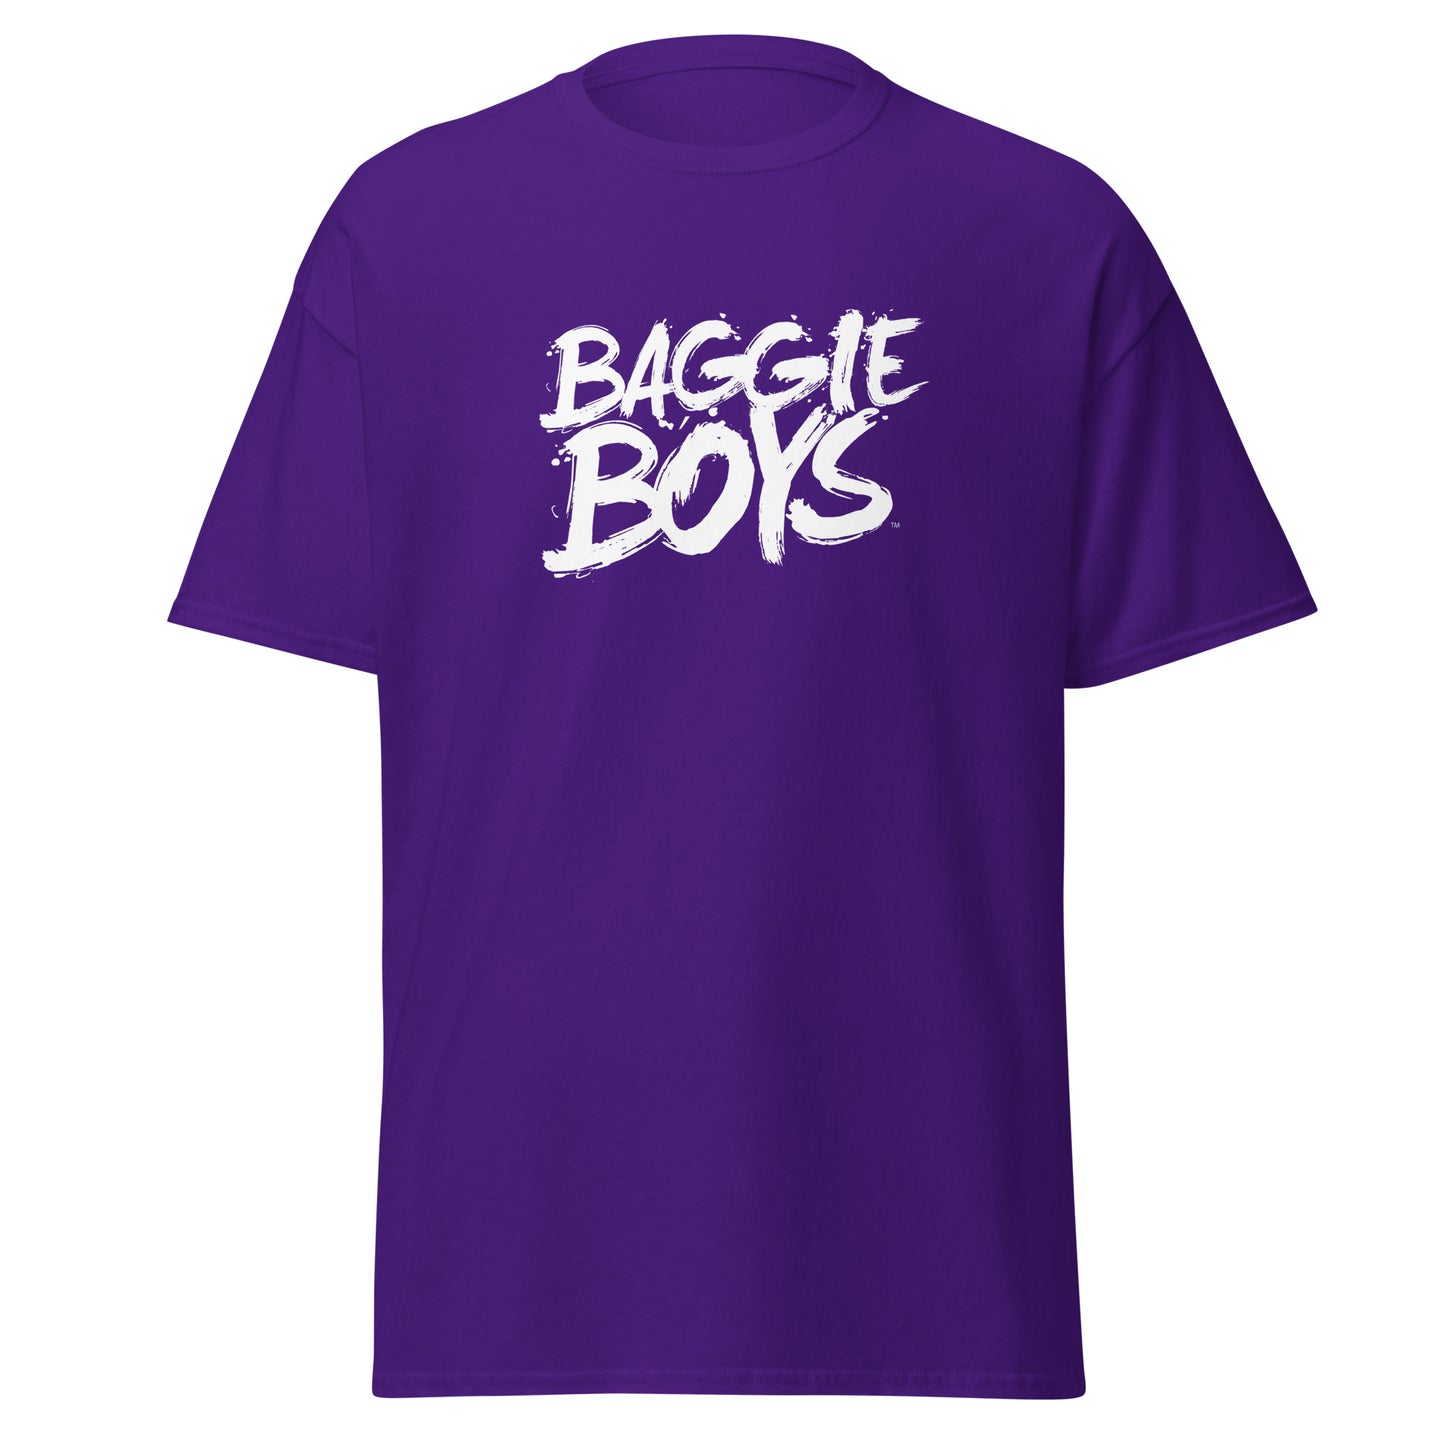 "Baggie Boys" Men's Classic Tee